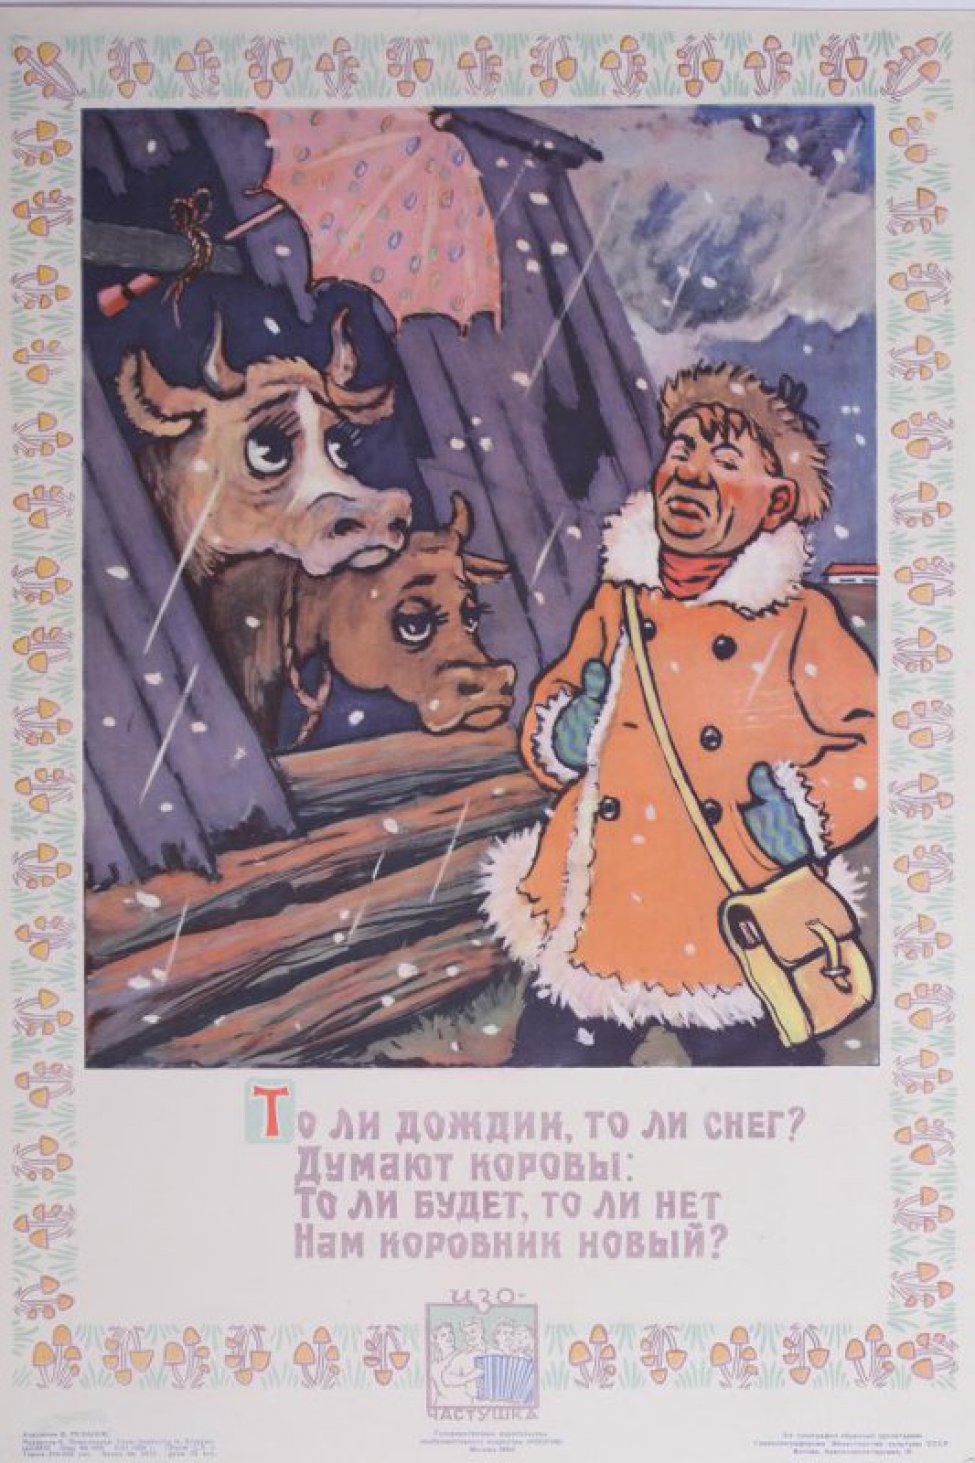 Изображен полуразрушенный коровник. В проломе крыши две коровьи головы под красным зонтом.Пролетает снег. Справа идет мужчина в дубленом полушубке, шапке, рукавицах с сумкой через плечо. Под изображнением текст: " То ли дождик, то ли снег?- думают коровы,- то ли будет, то ли нет нам коровник новый?"